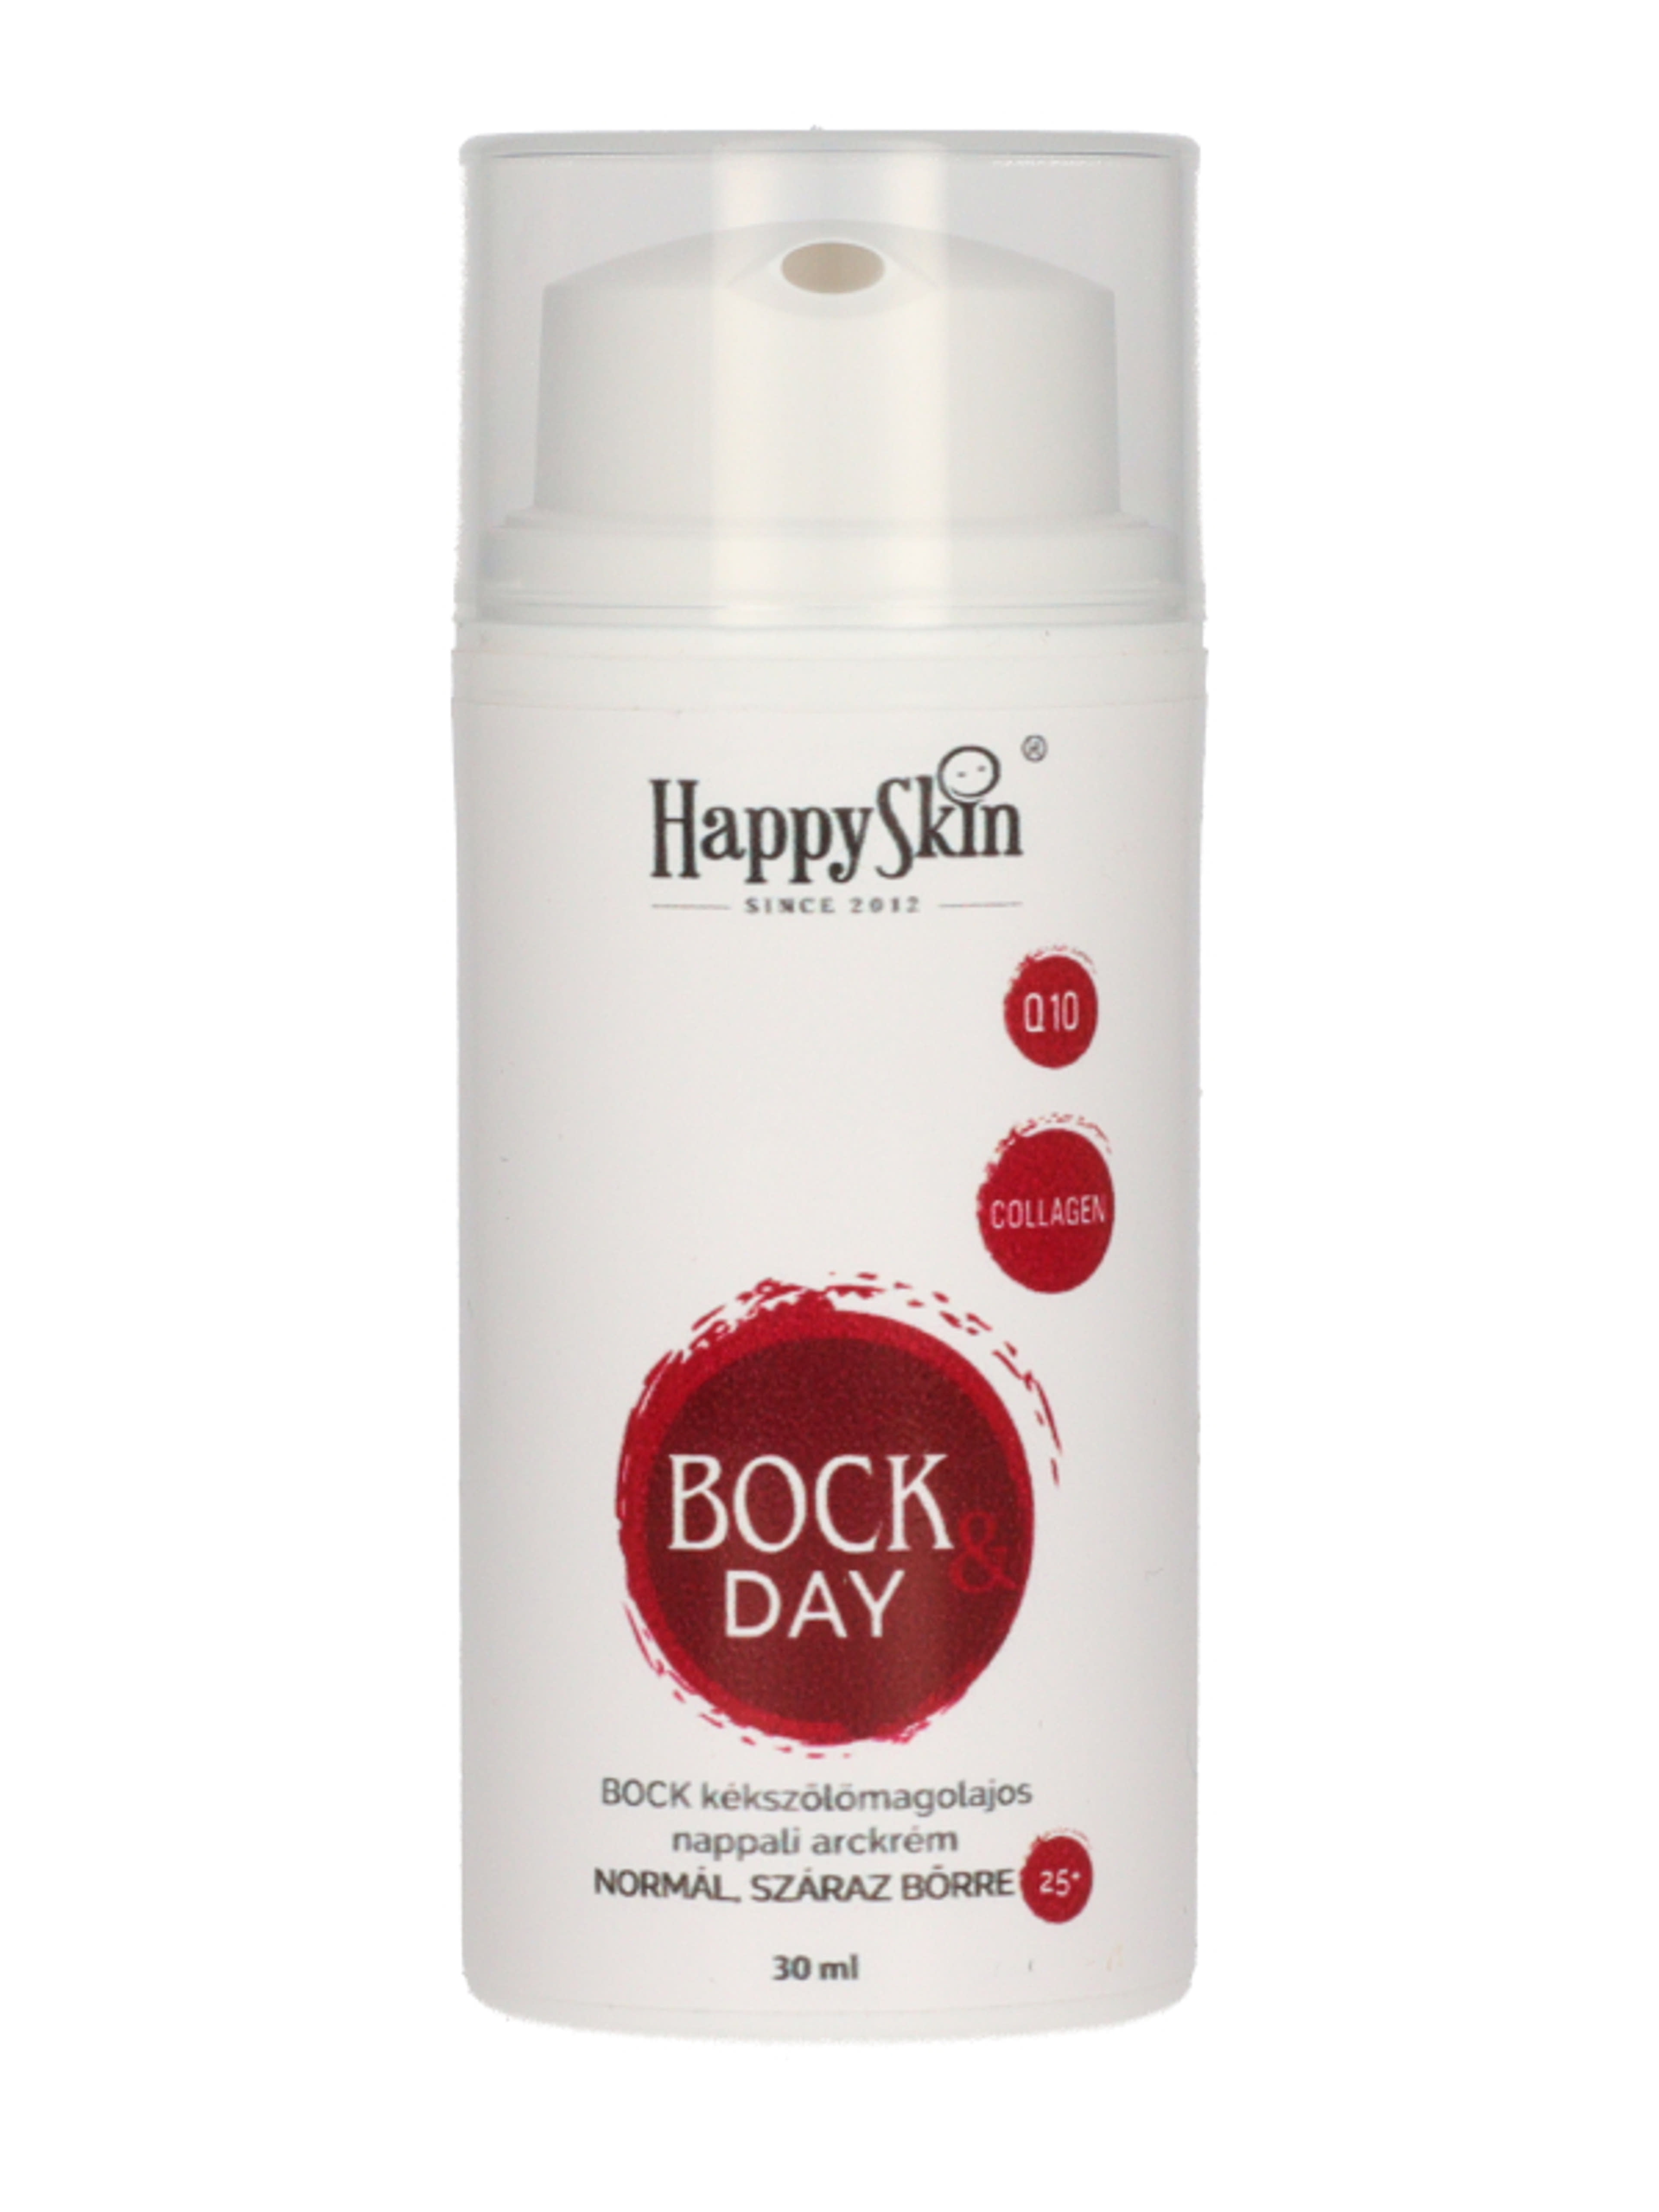 HappySkin Bock nappali arckrém kékszölőmagolajos - 30 ml